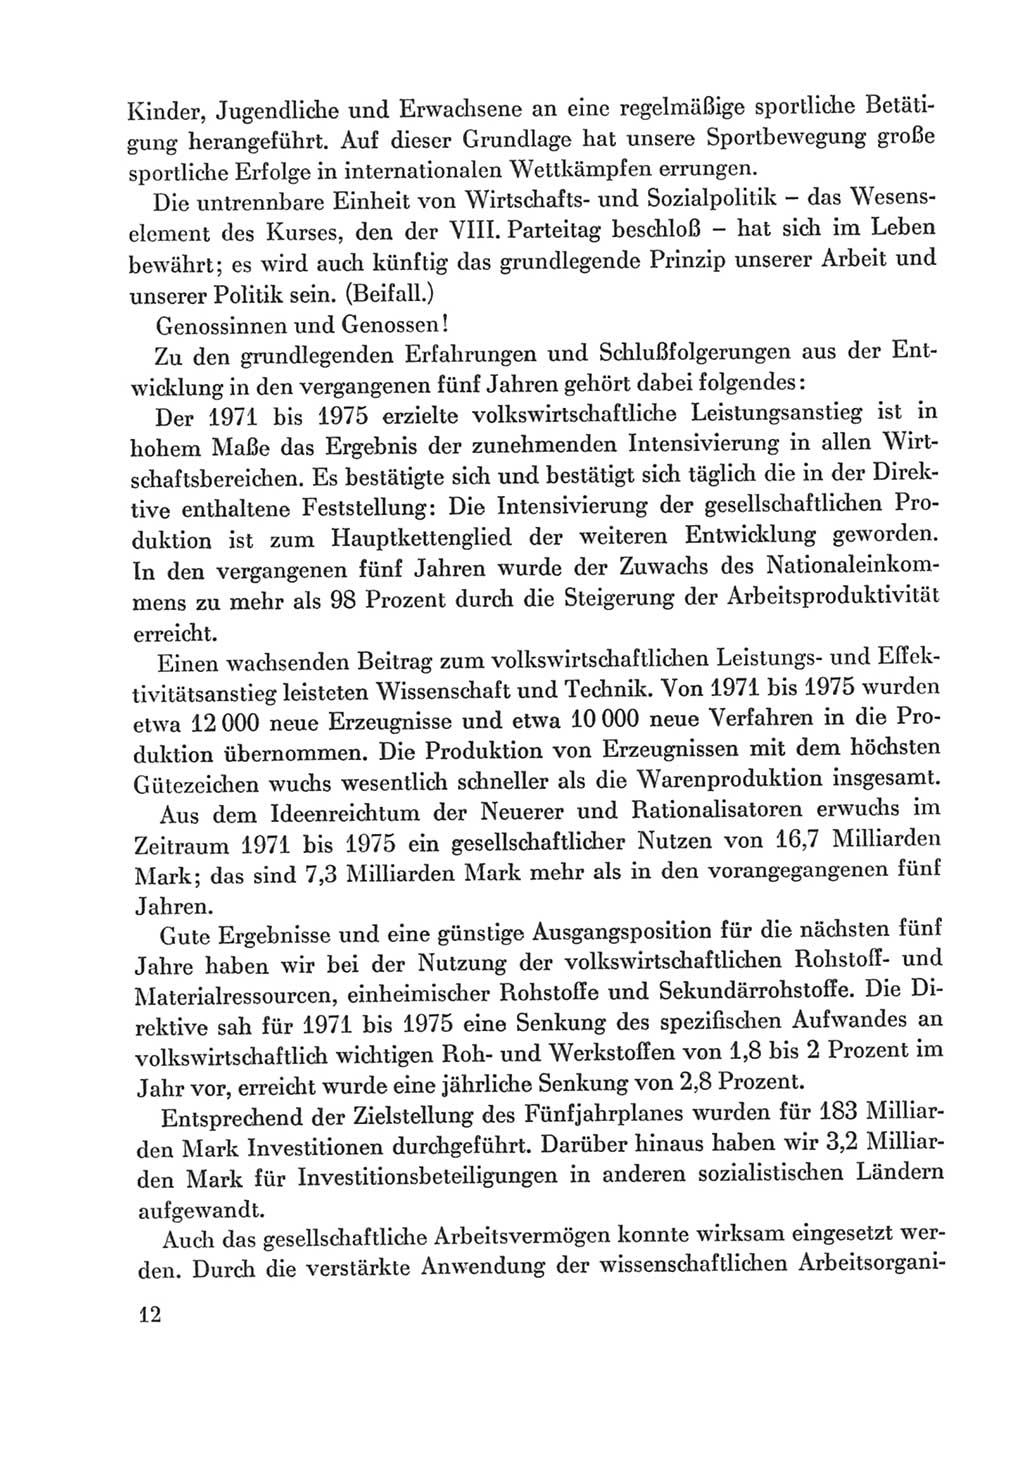 Protokoll der Verhandlungen des Ⅸ. Parteitages der Sozialistischen Einheitspartei Deutschlands (SED) [Deutsche Demokratische Republik (DDR)] 1976, Band 2, Seite 12 (Prot. Verh. Ⅸ. PT SED DDR 1976, Bd. 2, S. 12)